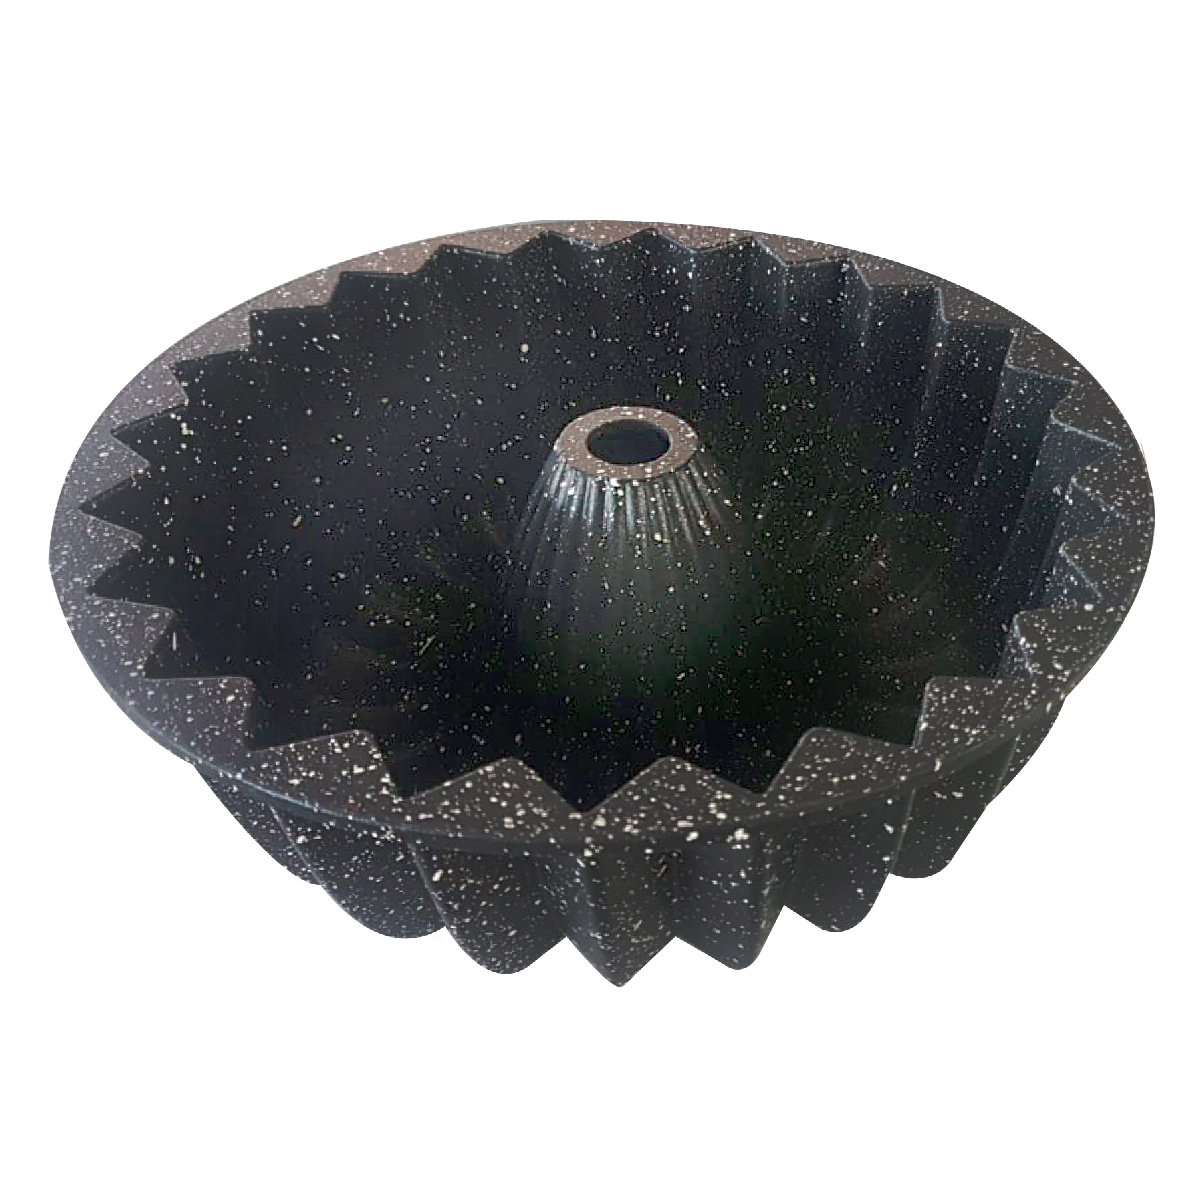 Dosthoff Cast Aluminum Granite Coated Bundform cake pan, 25 cm, Black, GDFXPR5